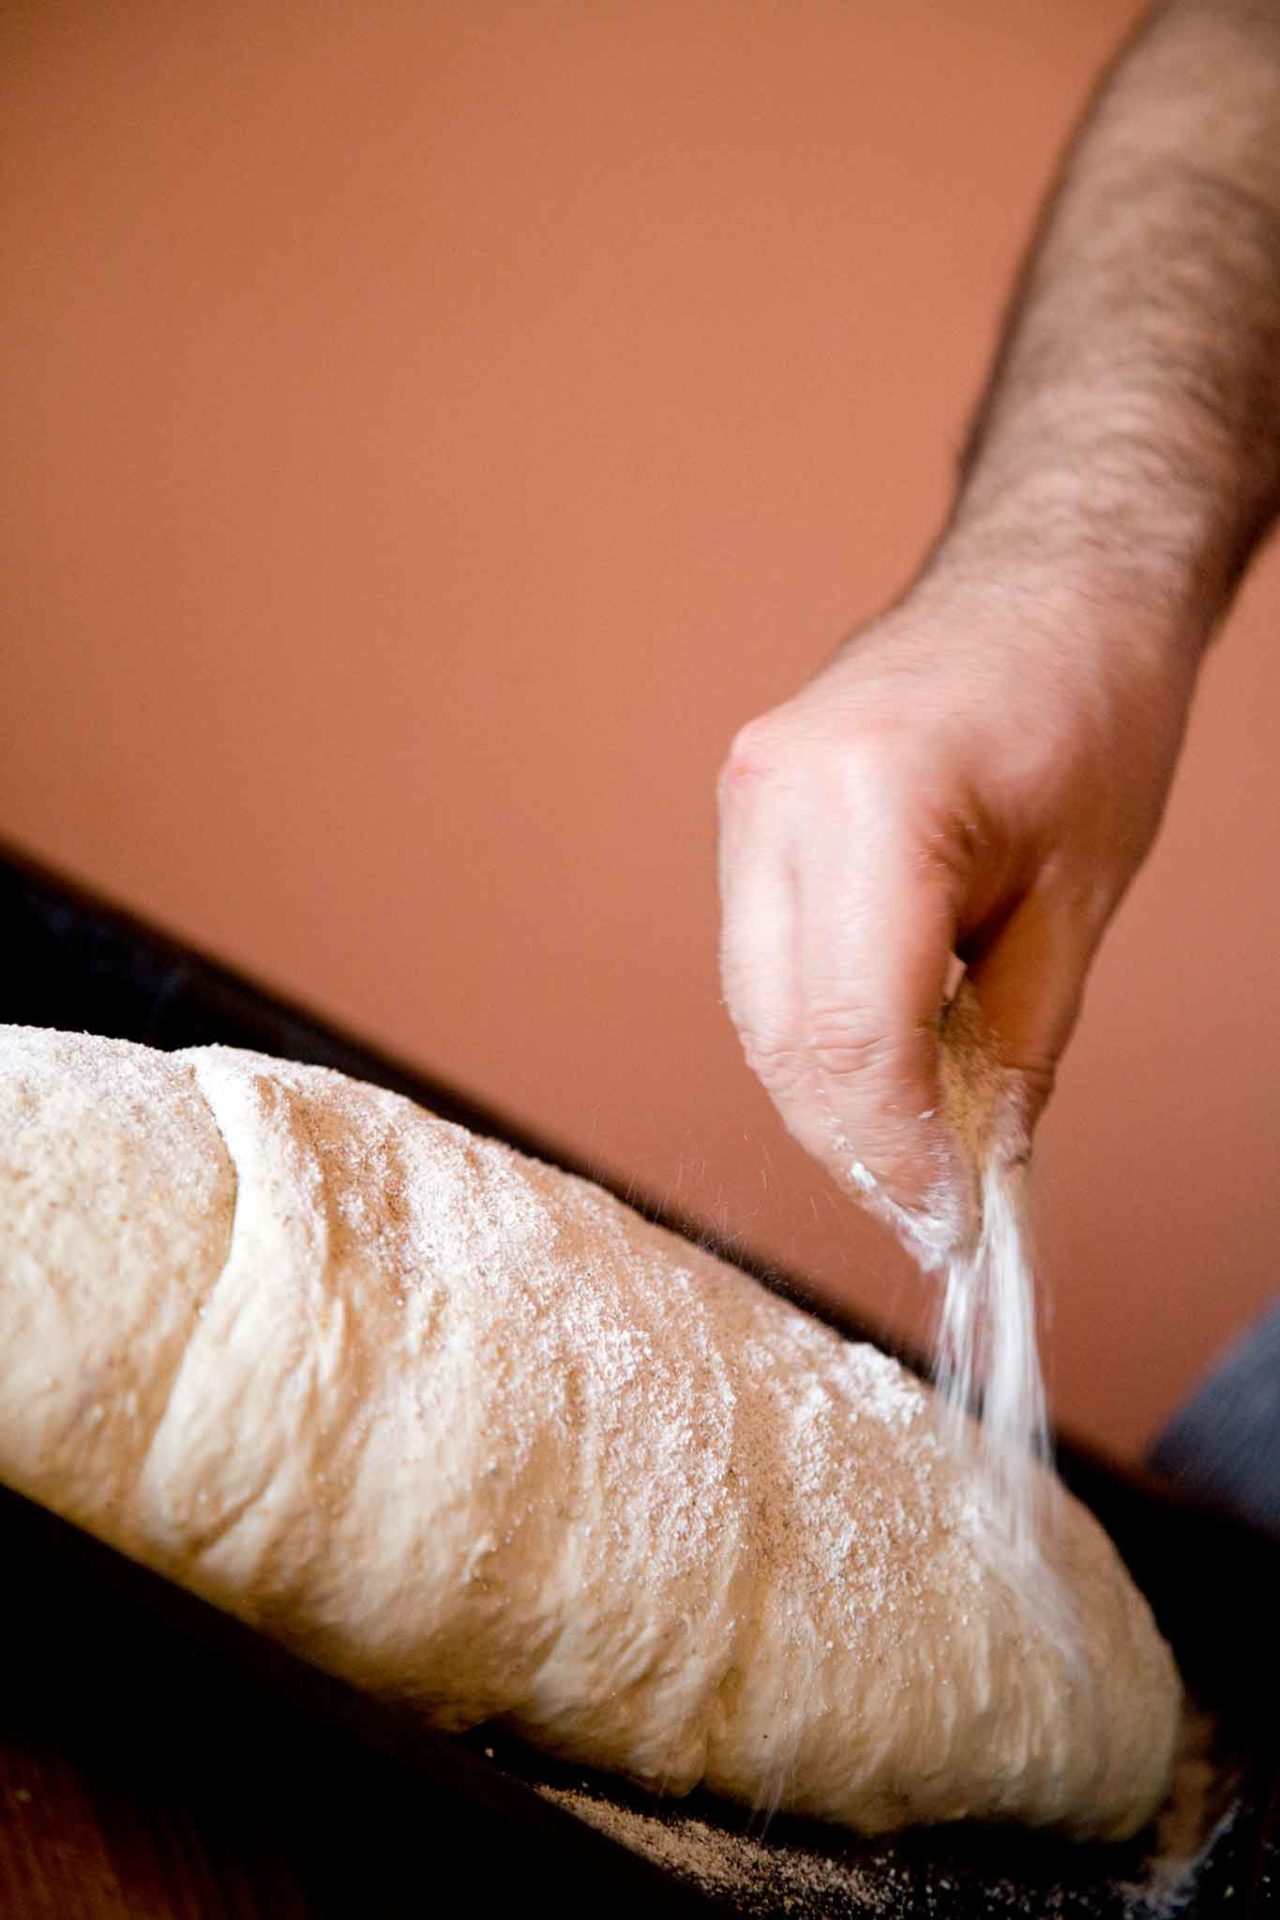 pane fatto in casa in teglia con farina